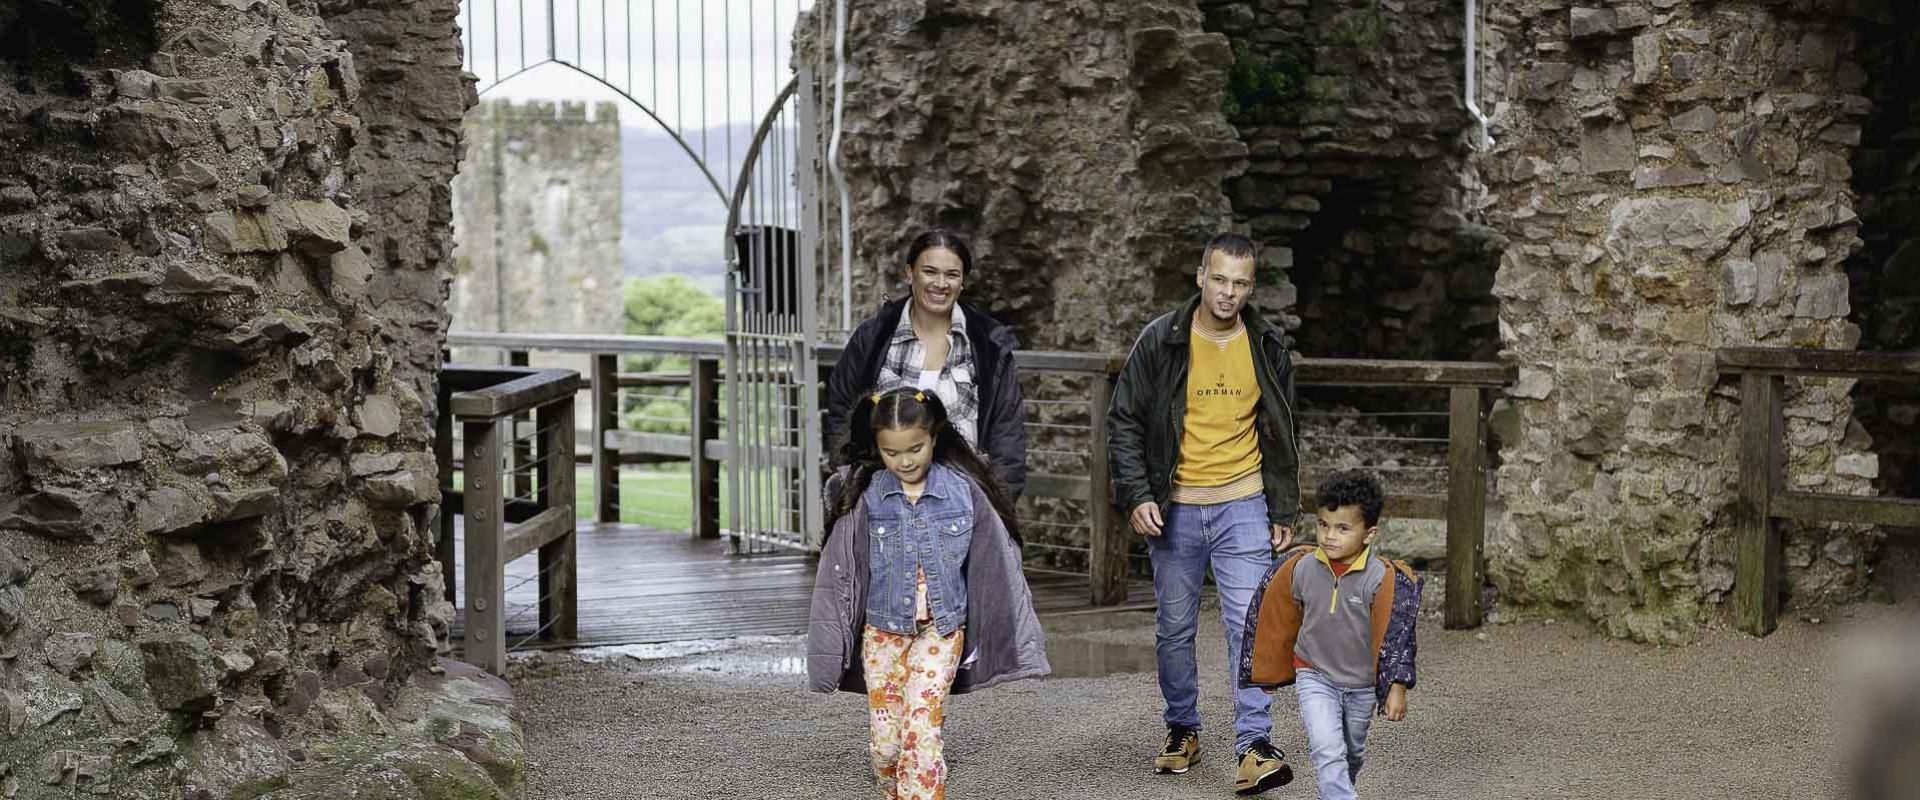 Ymwelwyr yn mynd i mewn i borthdy Castell Dinbych/Visitors entering the gatehouse of Denbigh Castle